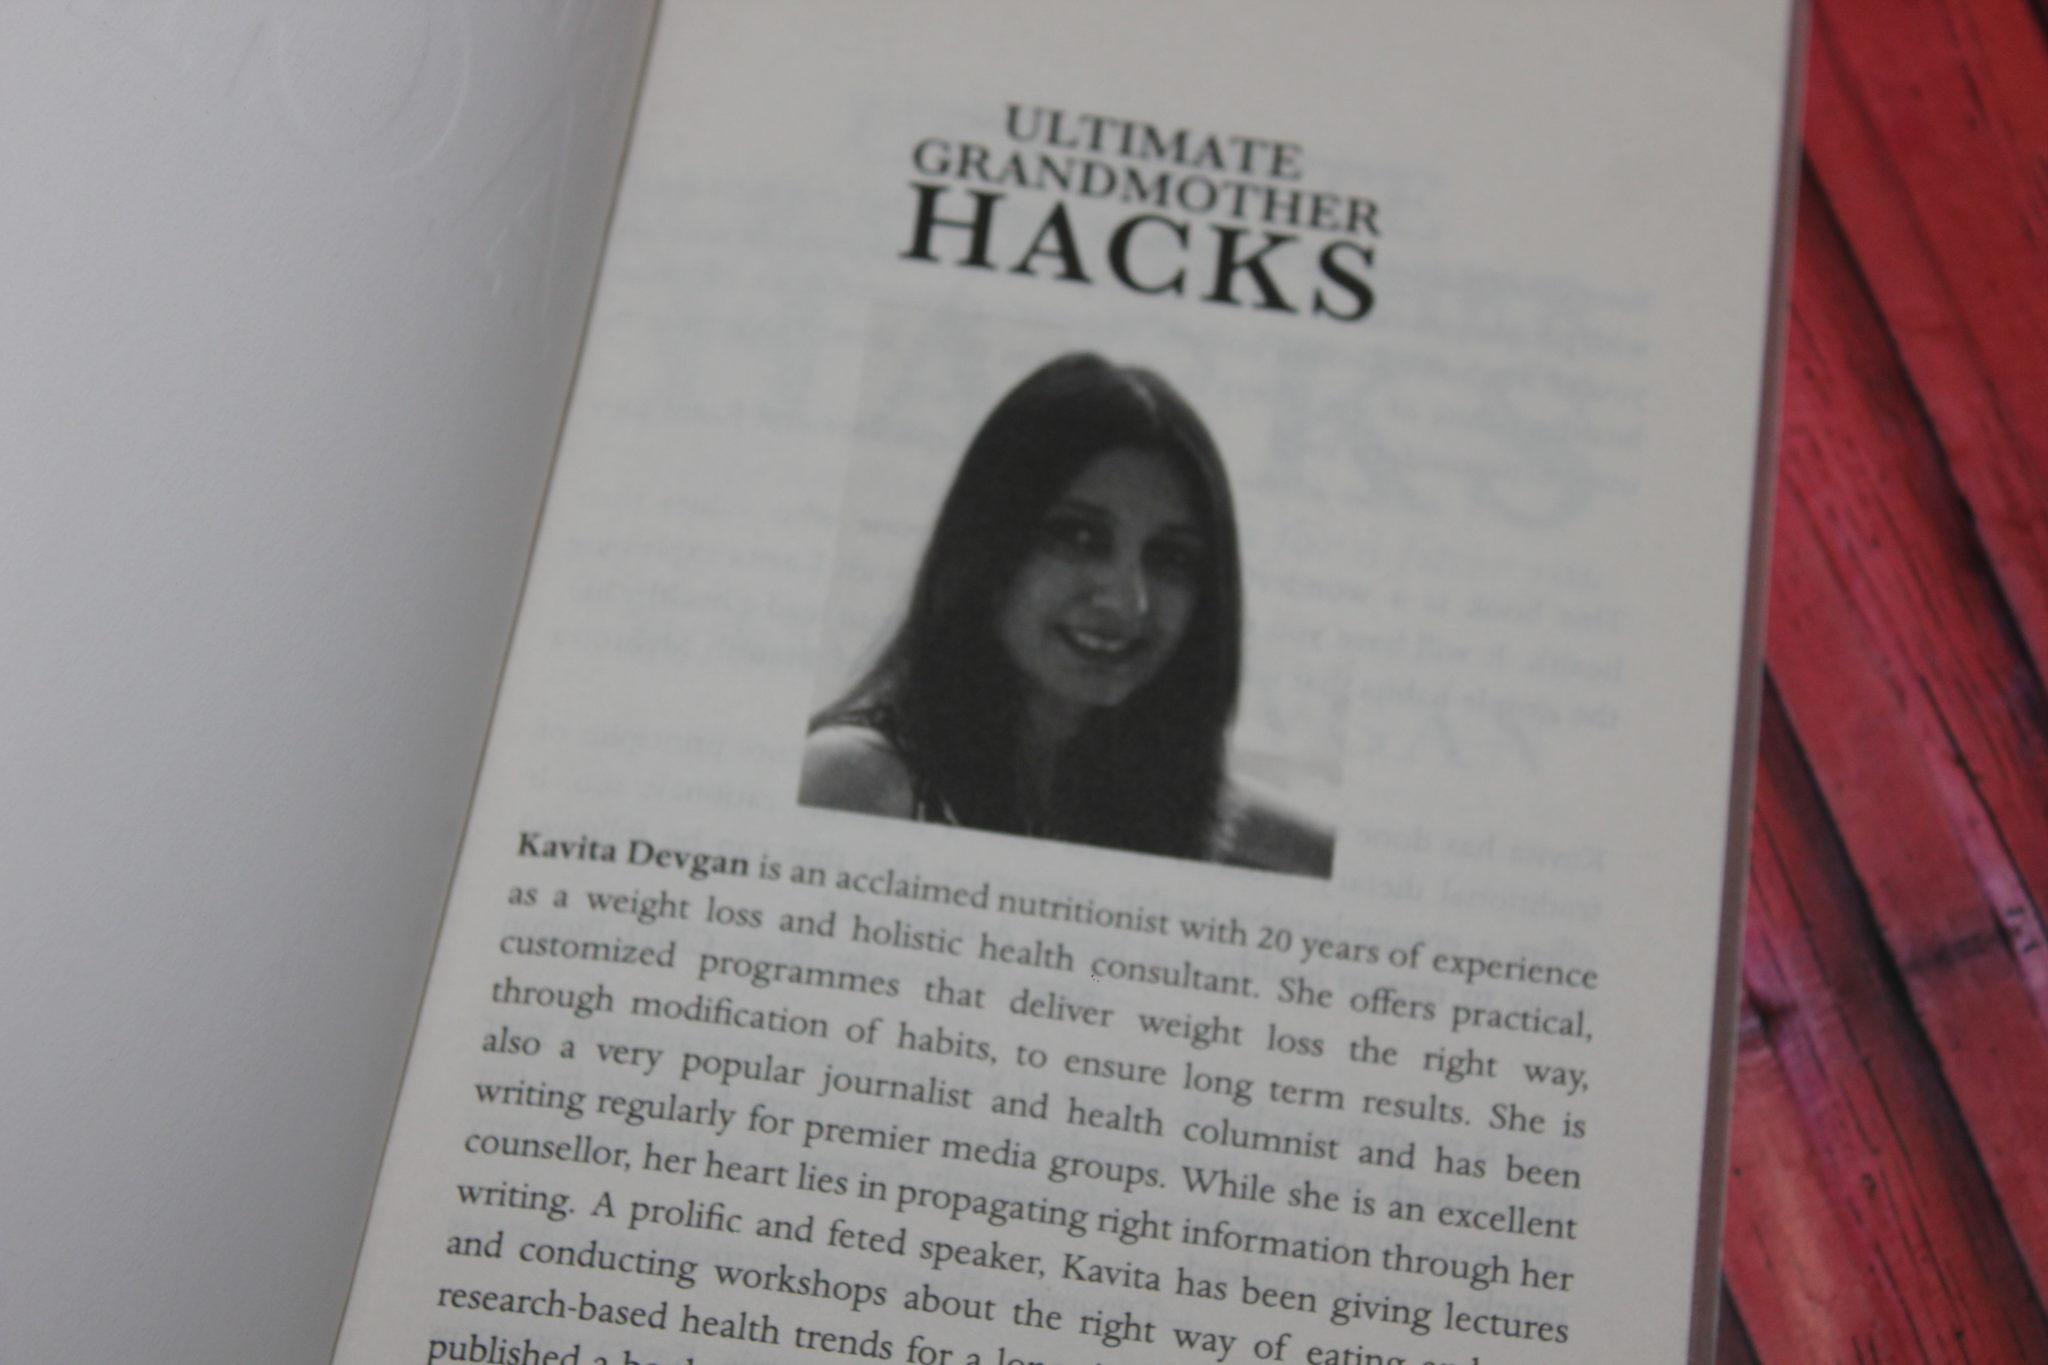 Ultimate Grandmoother hacks by Kavita Devgan